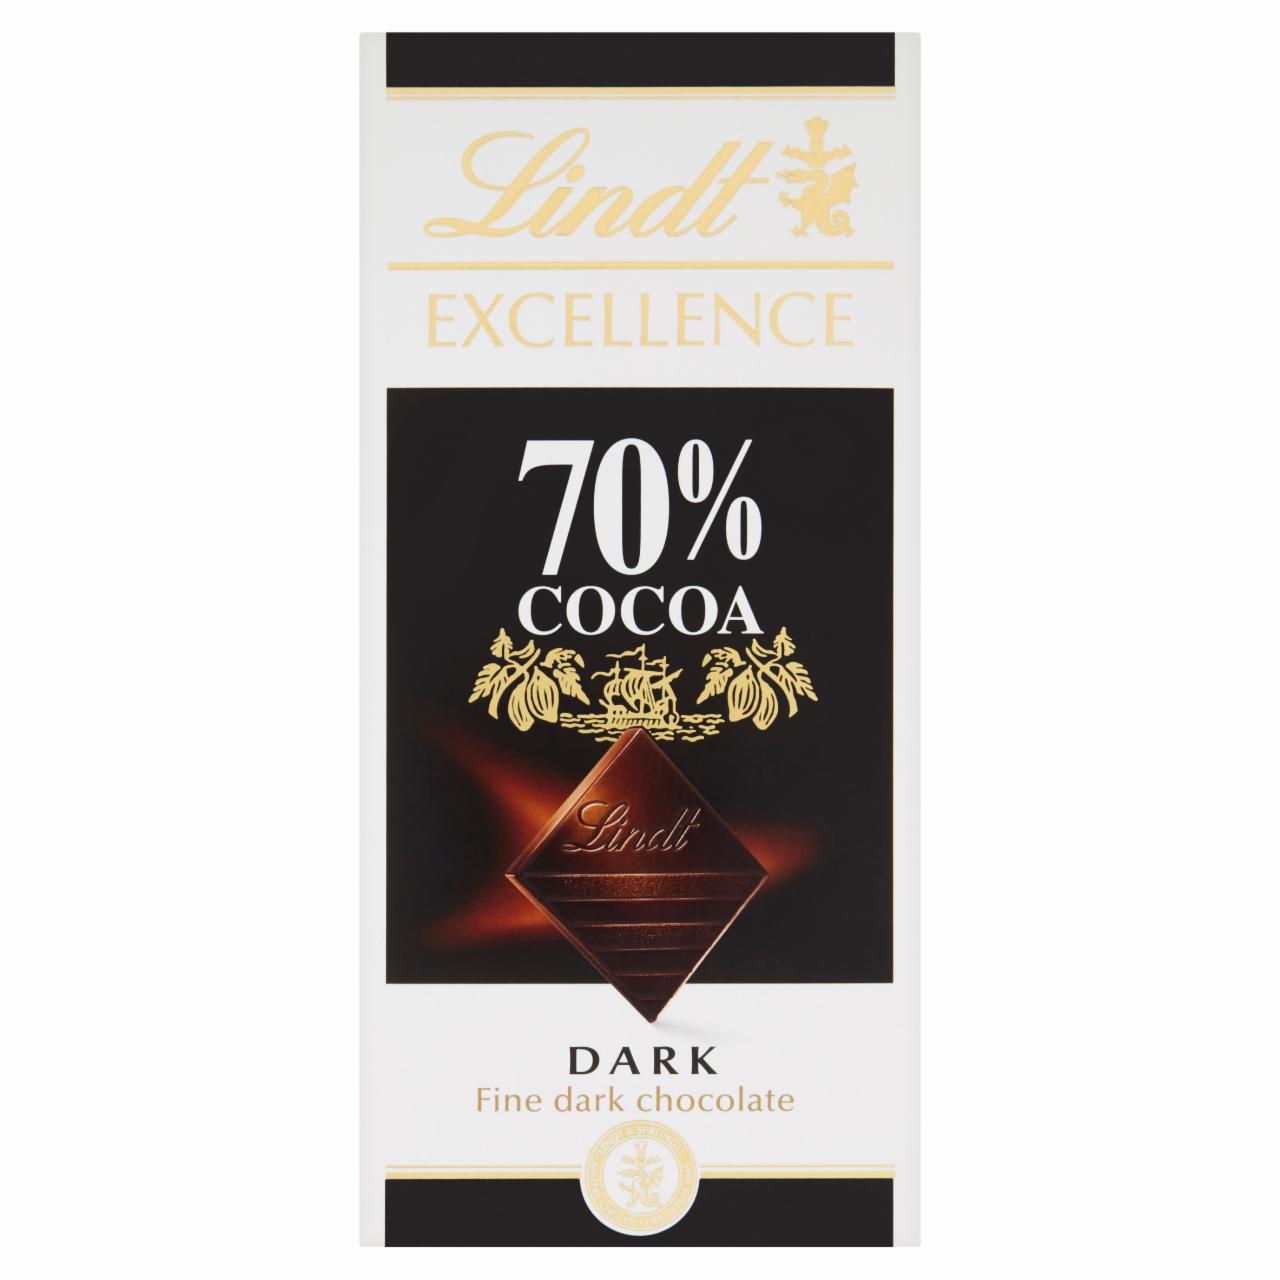 Képek - Lindt Excellence extra keserű csokoládé 70%